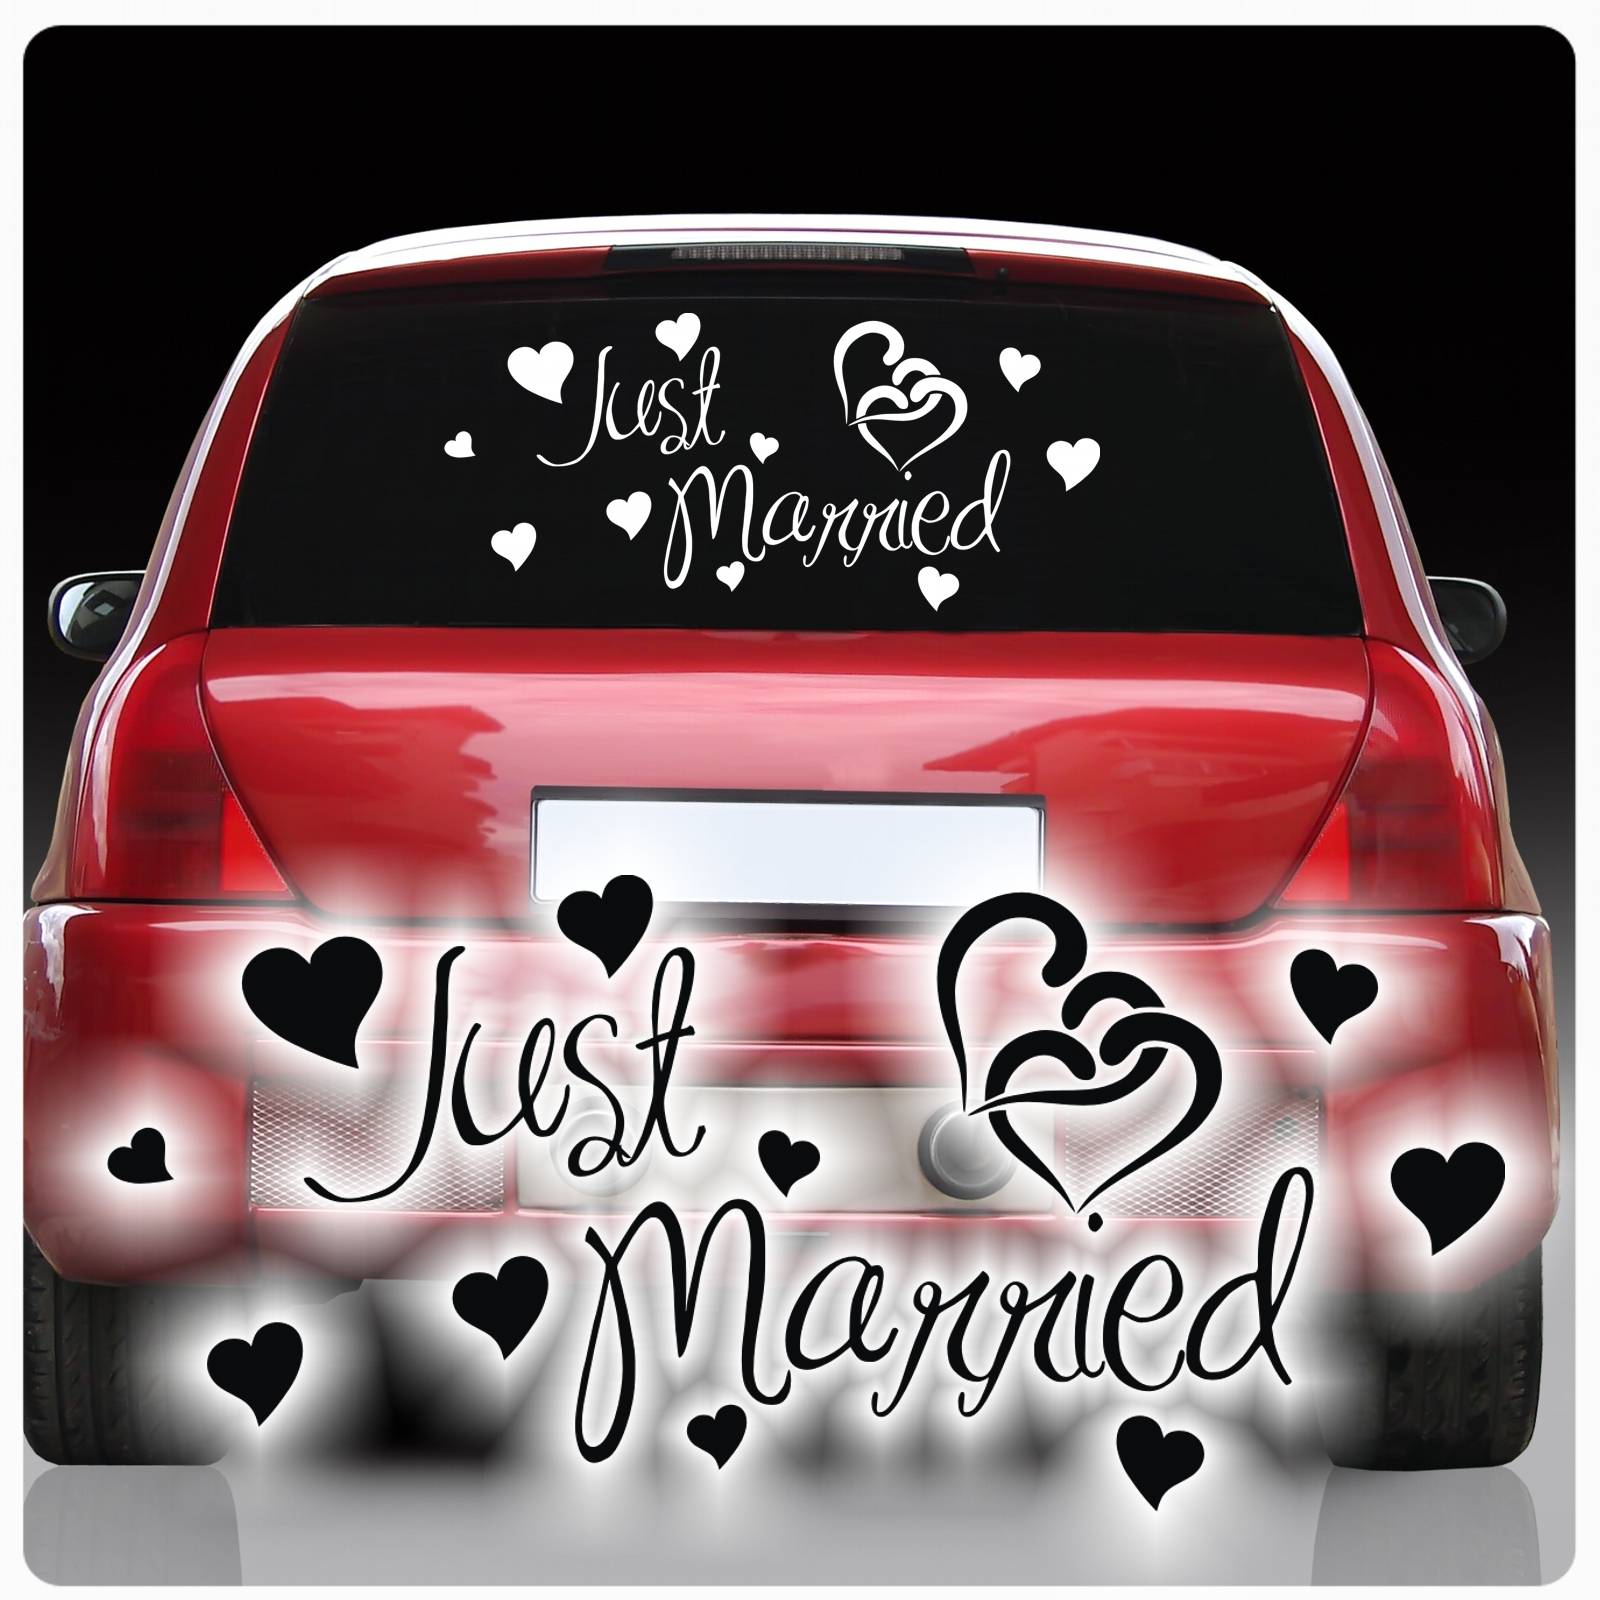 Just Married Auto Aufkleber Fur Die Heckscheiben Hochzeit Sticker Xxl Gtti Gm